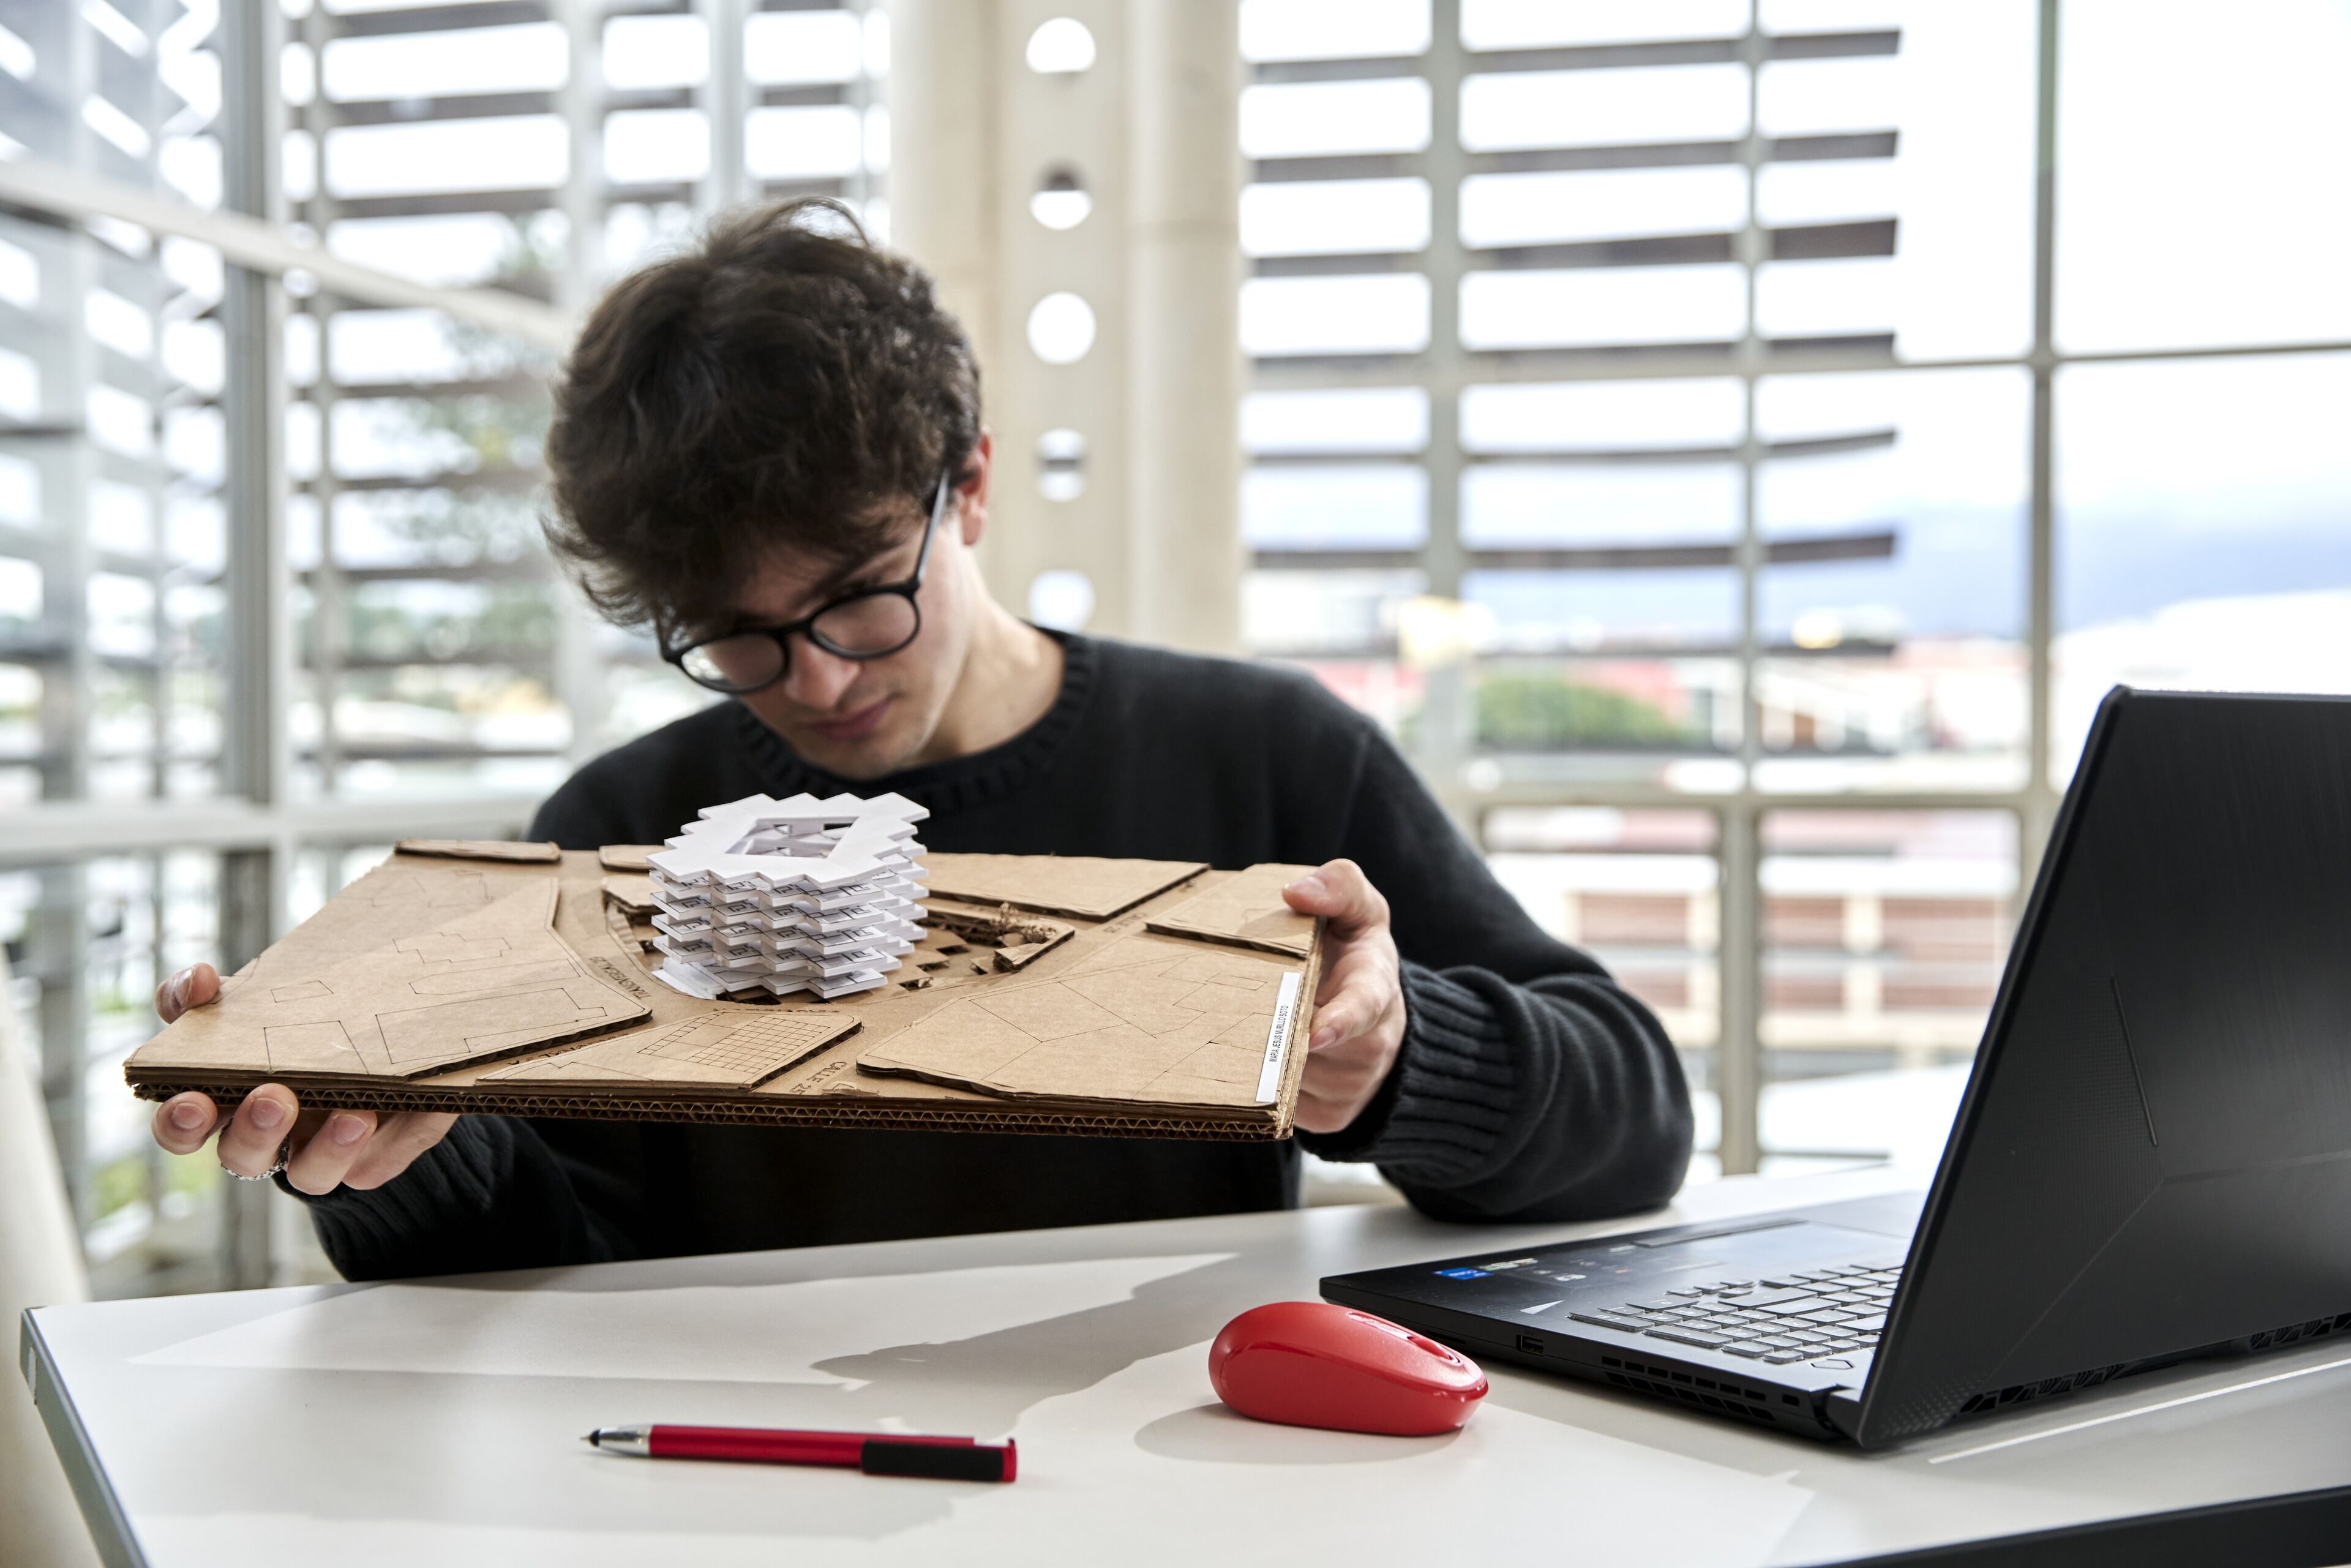 Un arquitecto joven observa atentamente un modelo arquitectónico blanco sobre una base de cartón, con un portátil y un ratón rojo sobre la mesa.